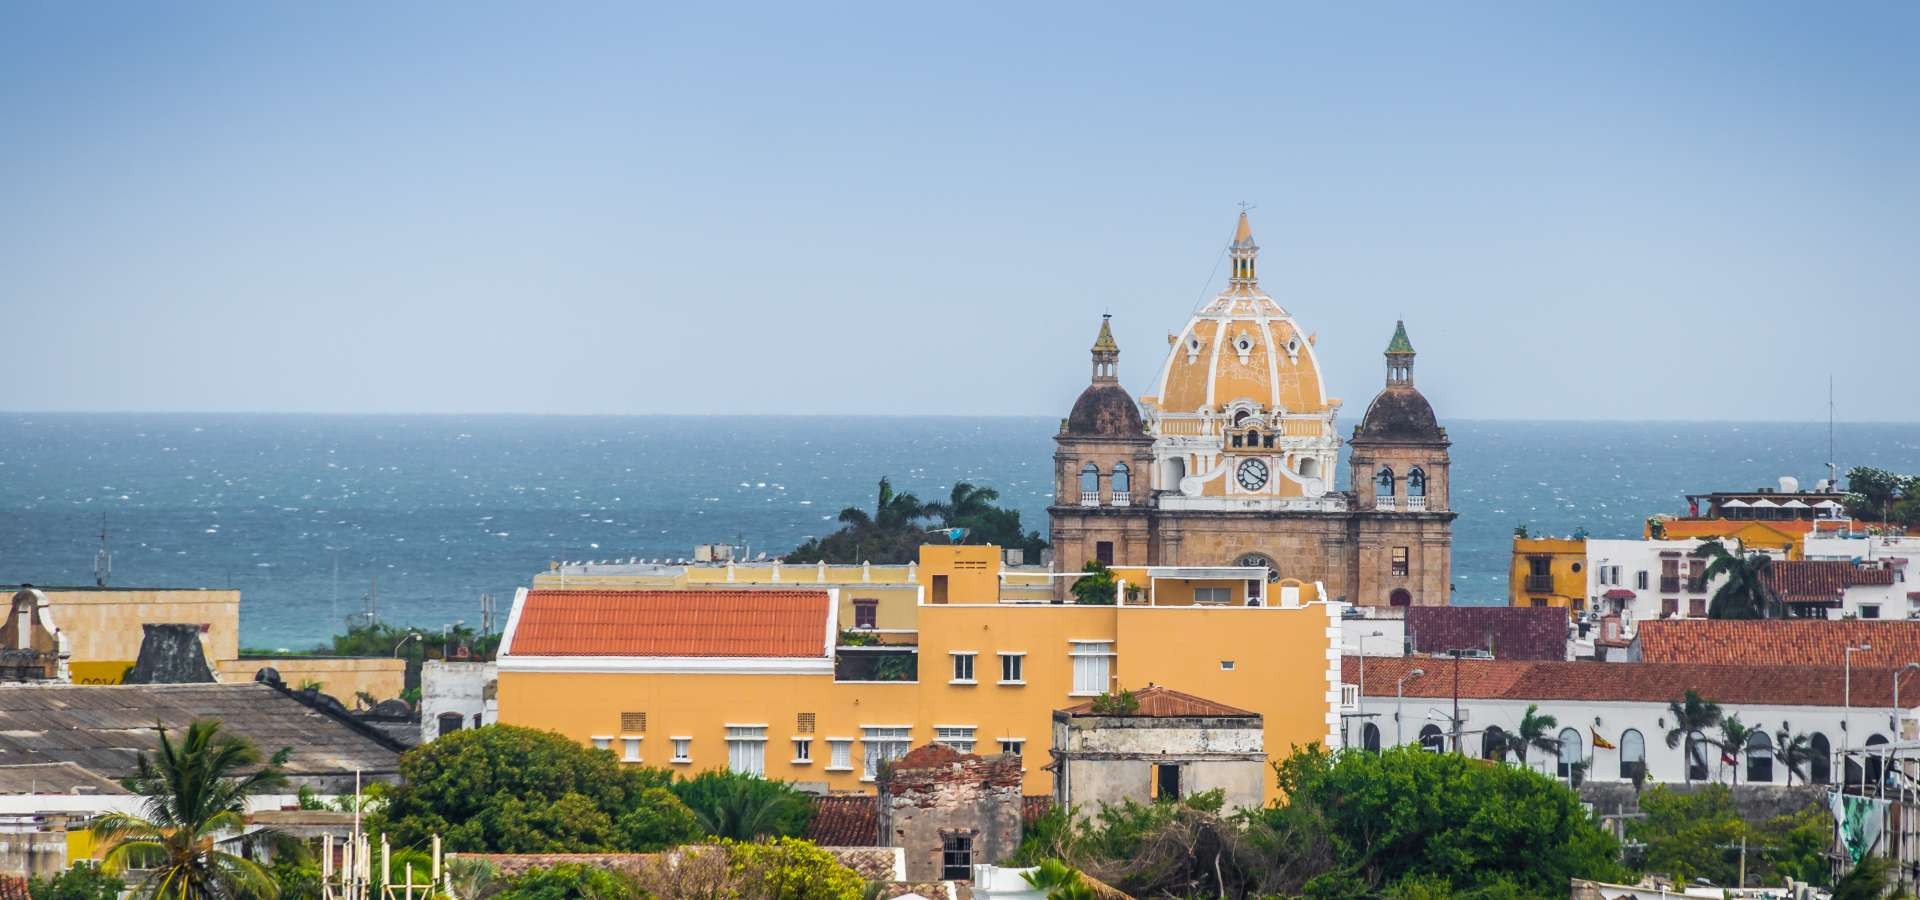 Cartagena de Indias, la Joya colonial de Colombia